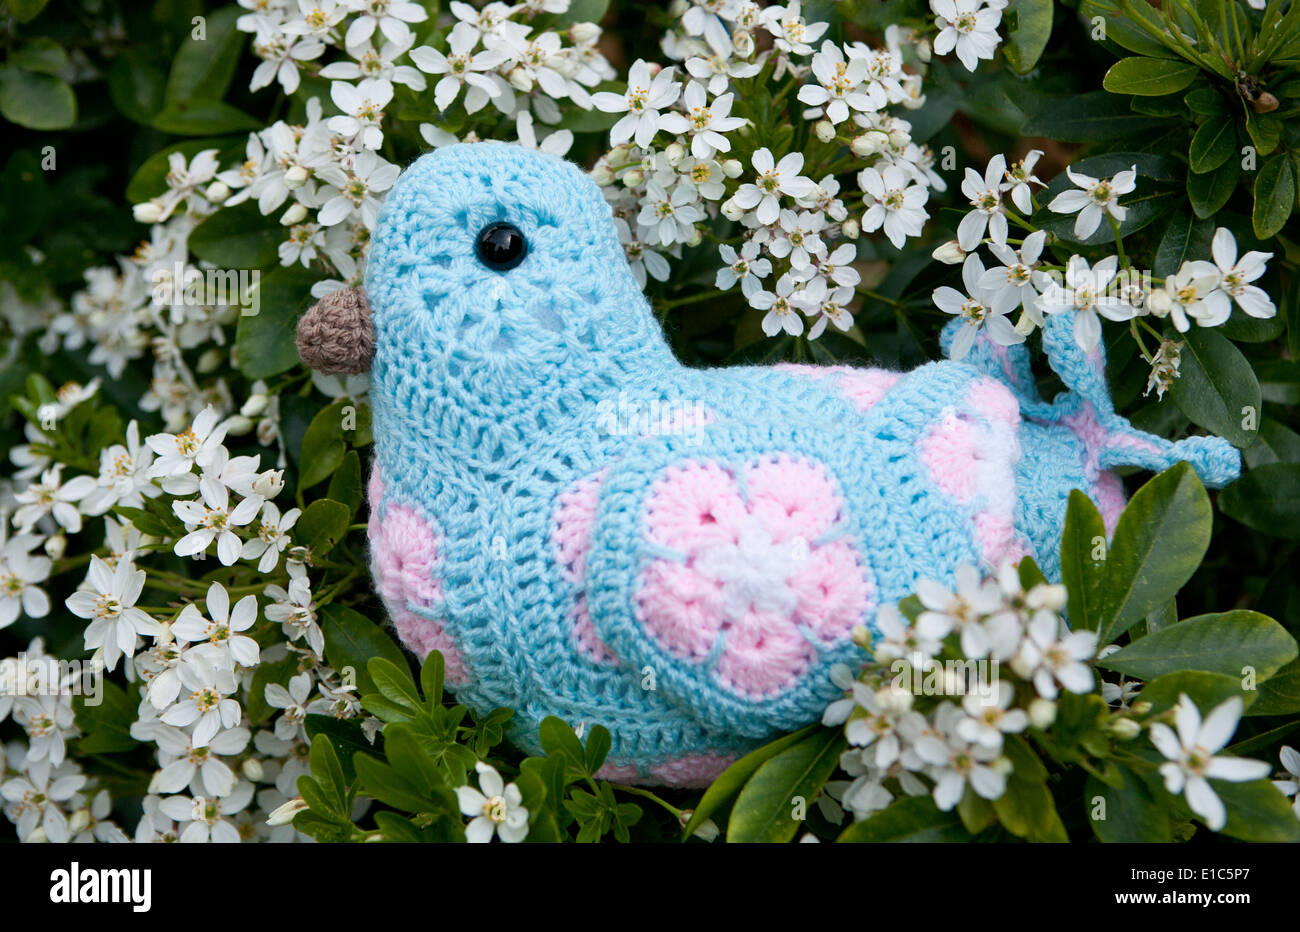 Handmade crocheted toy bird using African Flower Pentagons motifs Stock Photo